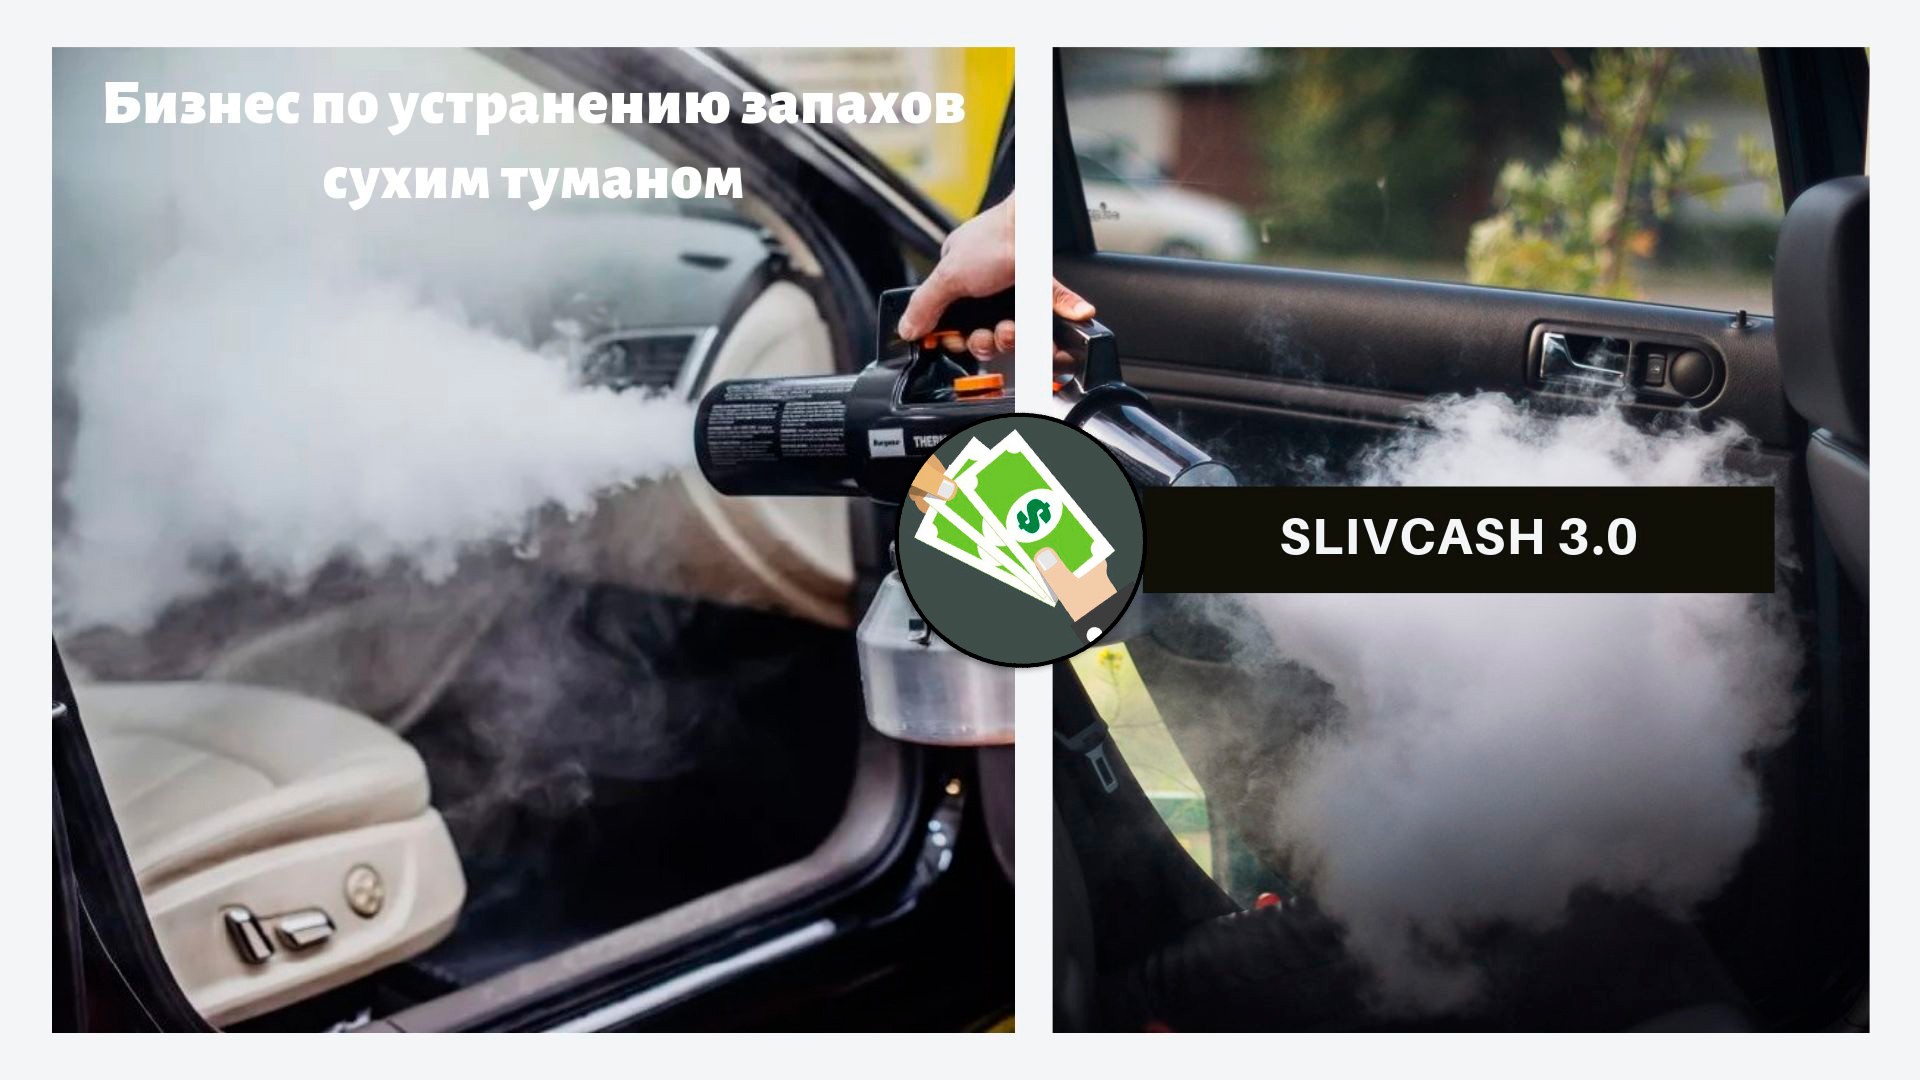 Сухой туман для авто. Запах в машине. Сухой туман баннер. Причины запаха газа в автомобиле. Воняет газ в салоне